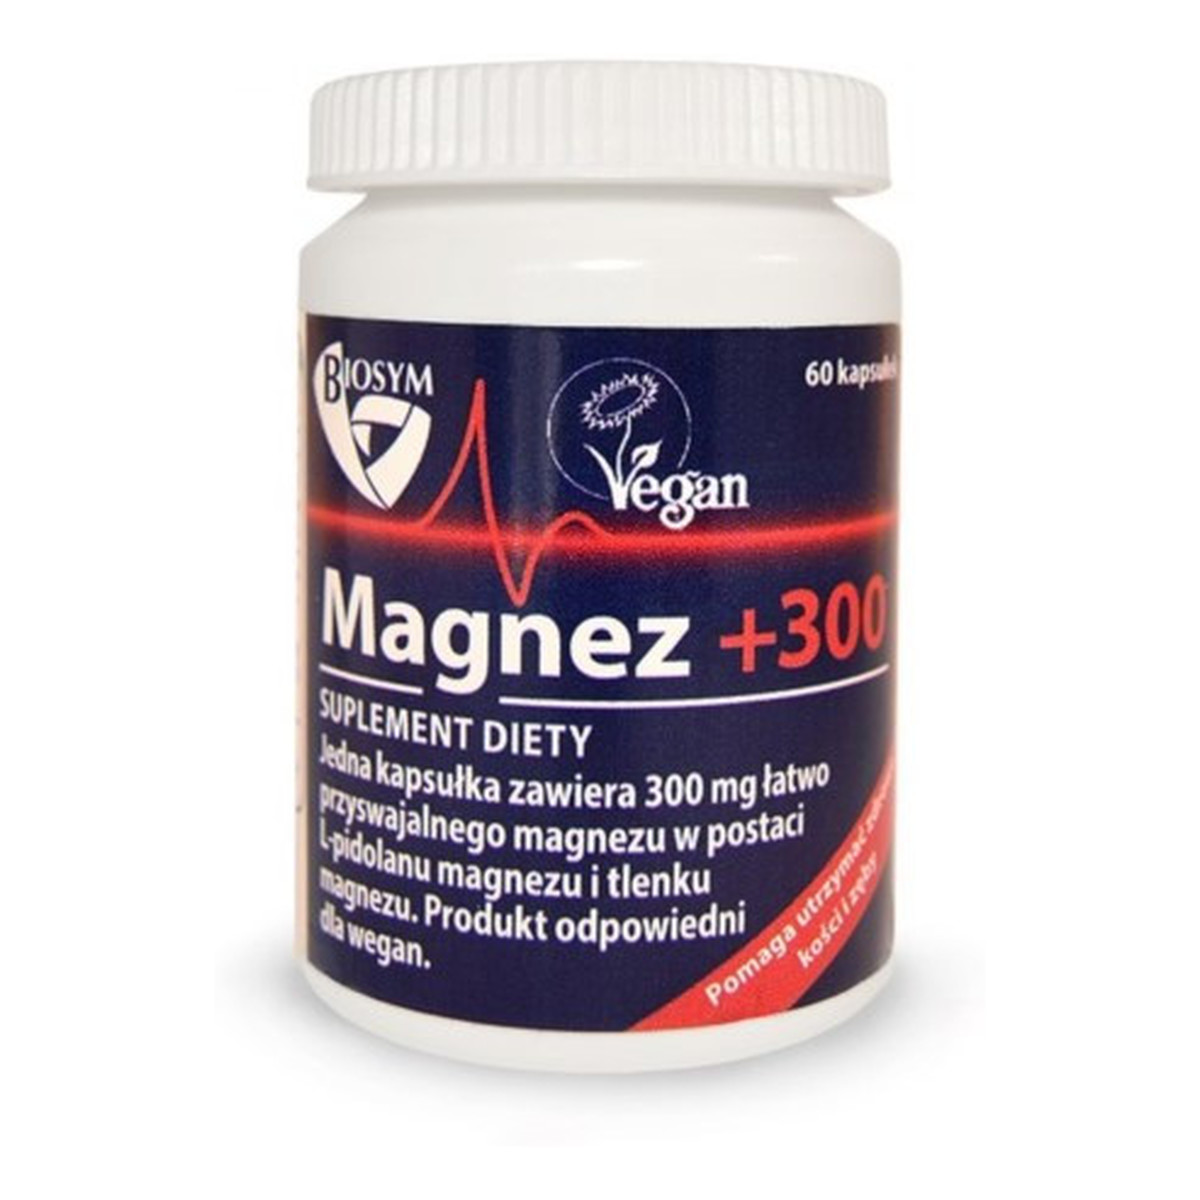 Biosym Magnez +300 suplement diety 60 kapsułek